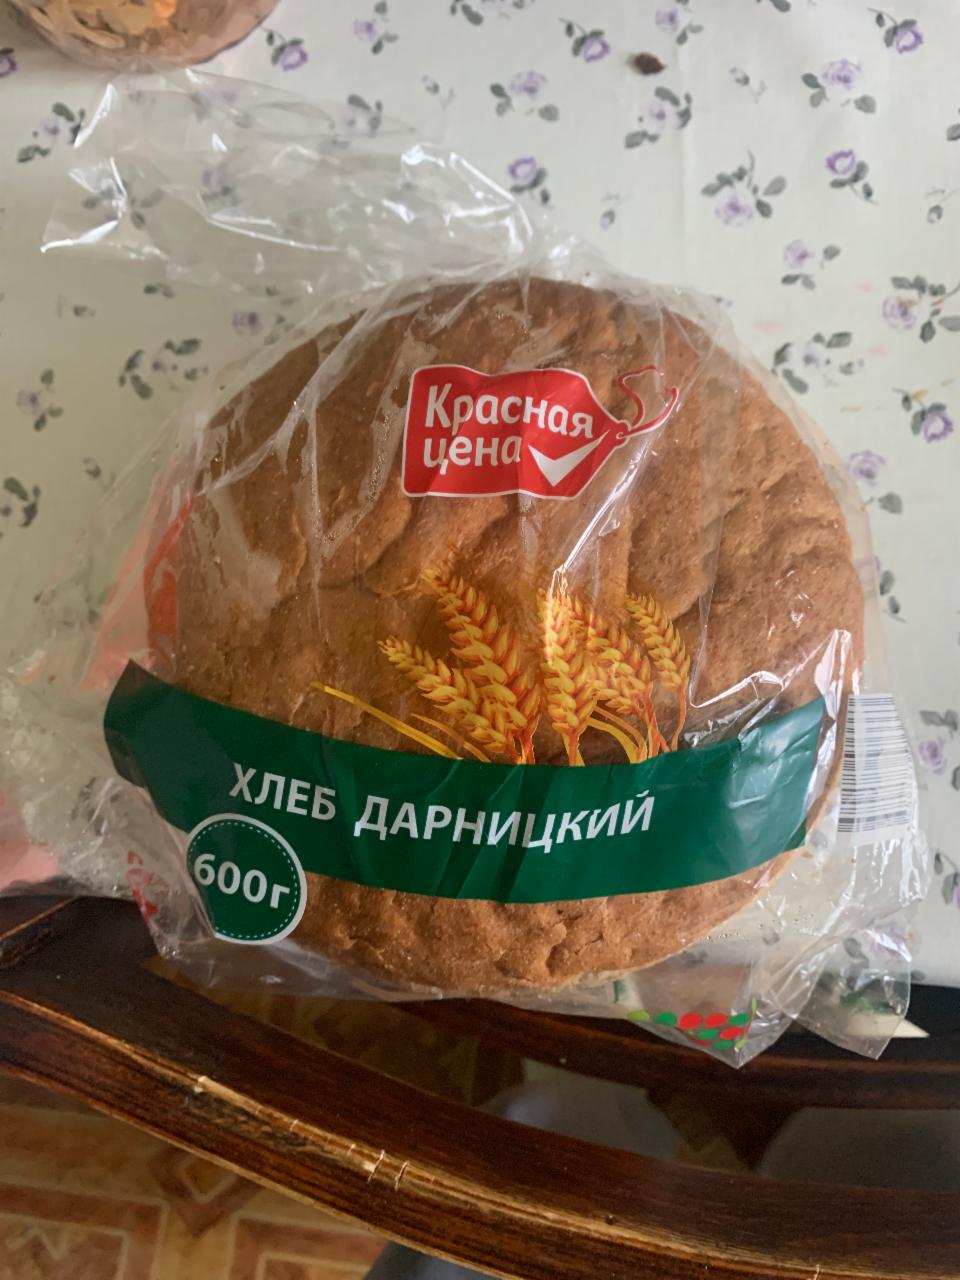 Фото - Хлеб дарницкий в упаковке Красная цена